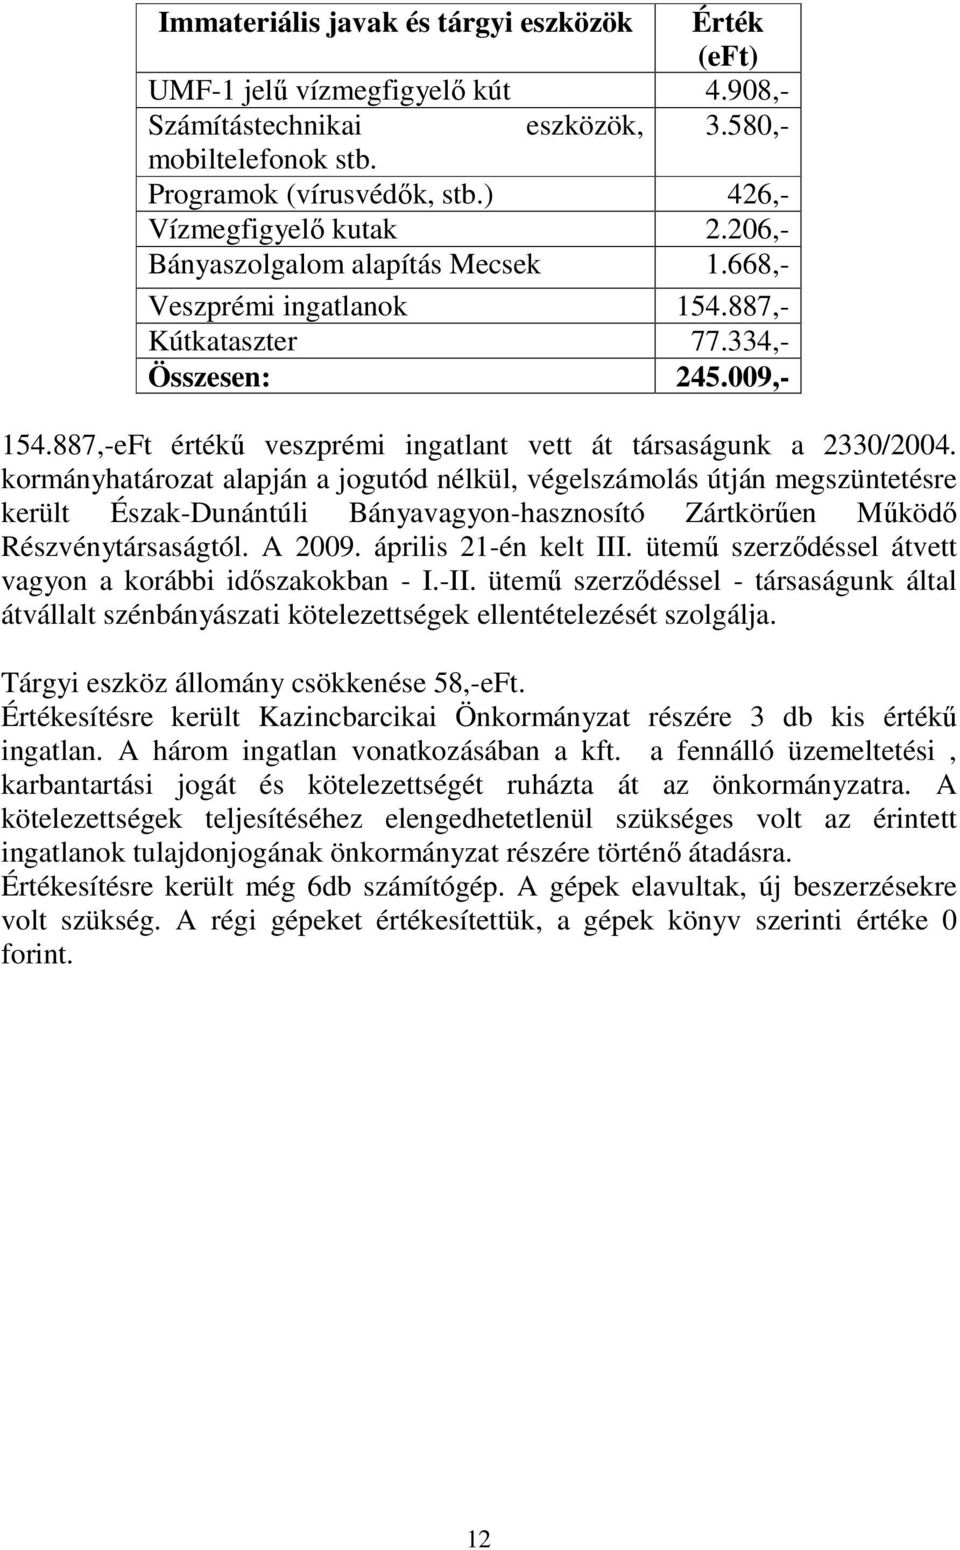 kormányhatározat alapján a jogutód nélkül, végelszámolás útján megszüntetésre került Észak-Dunántúli Bányavagyon-hasznosító Zártkörően Mőködı Részvénytársaságtól. A 2009. április 21-én kelt III.